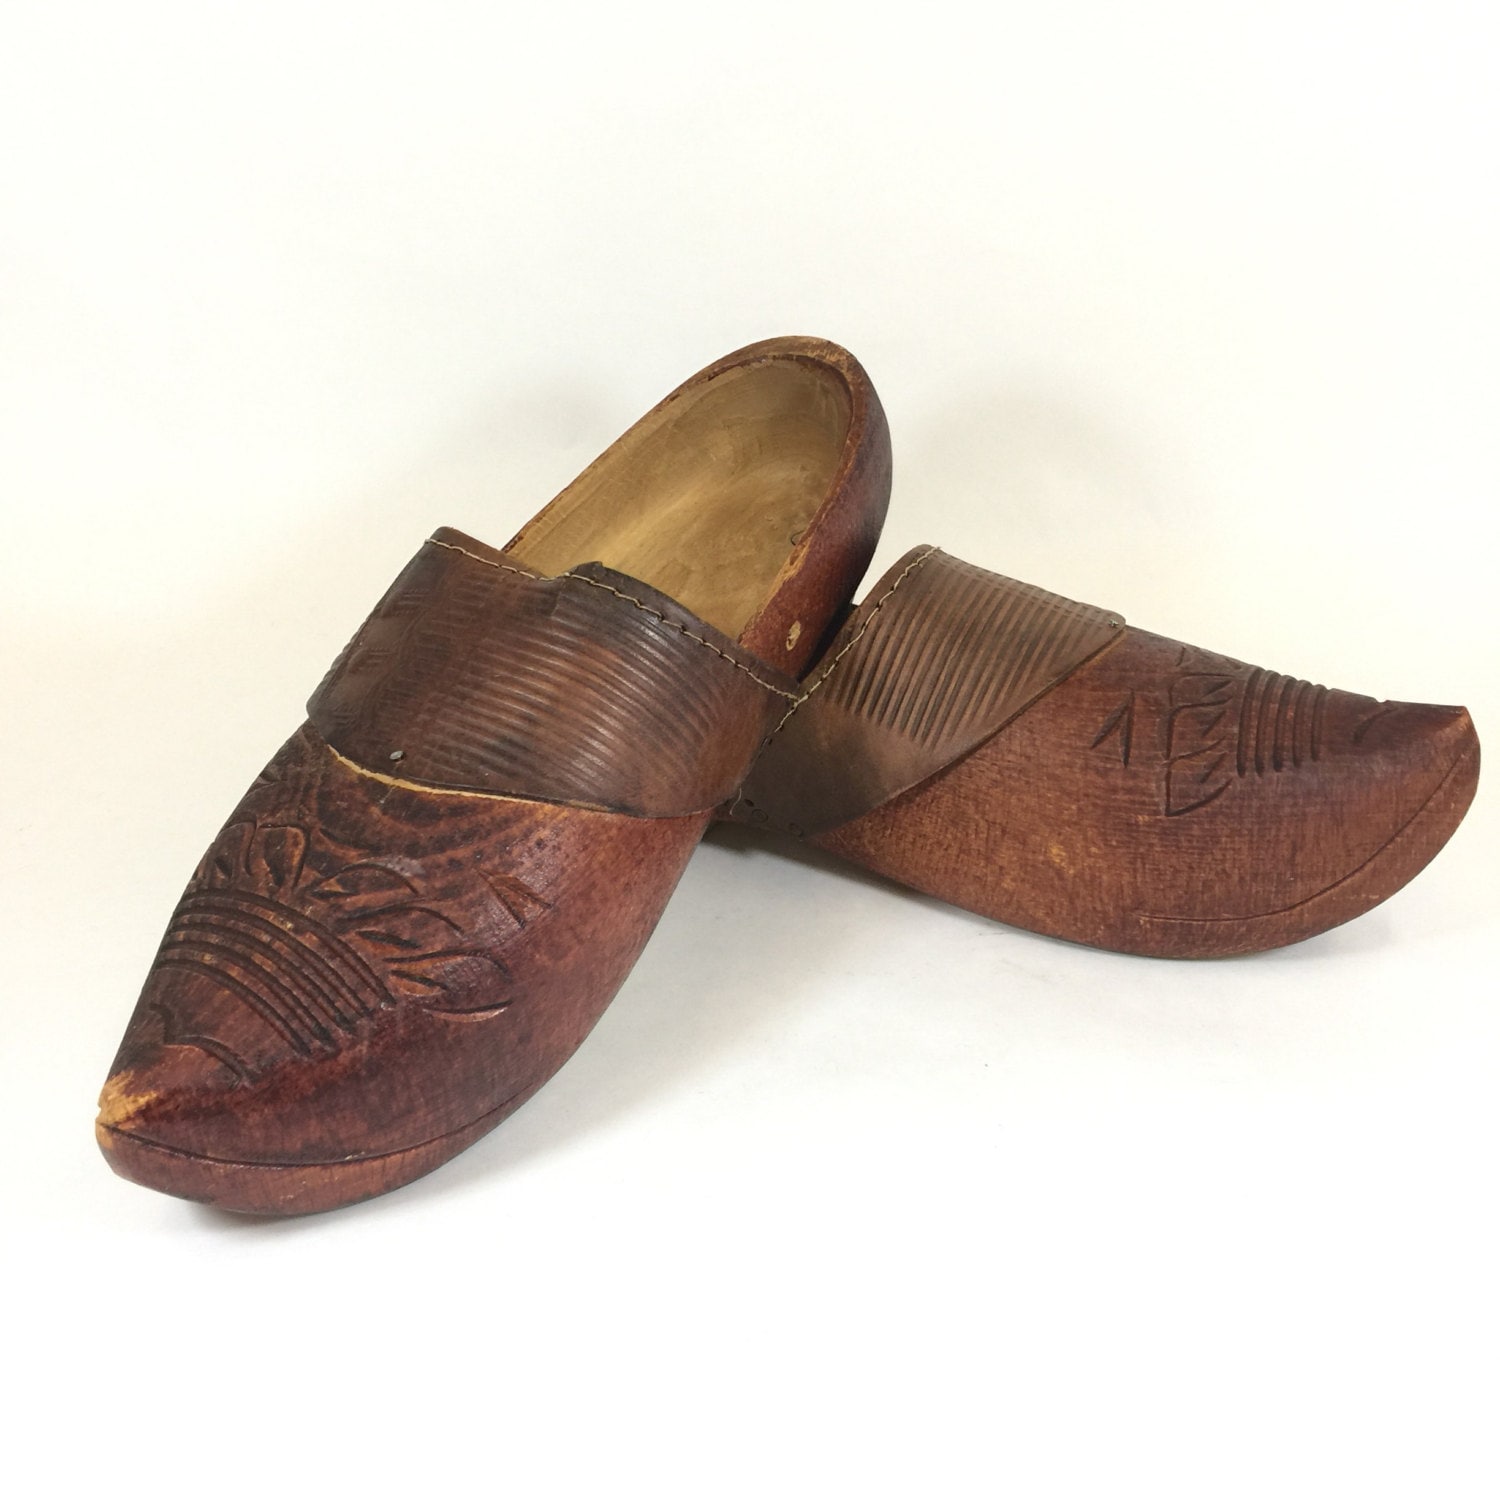 Vintage Wooden Shoes Carved Wood Shoes Old Dutch Sabots